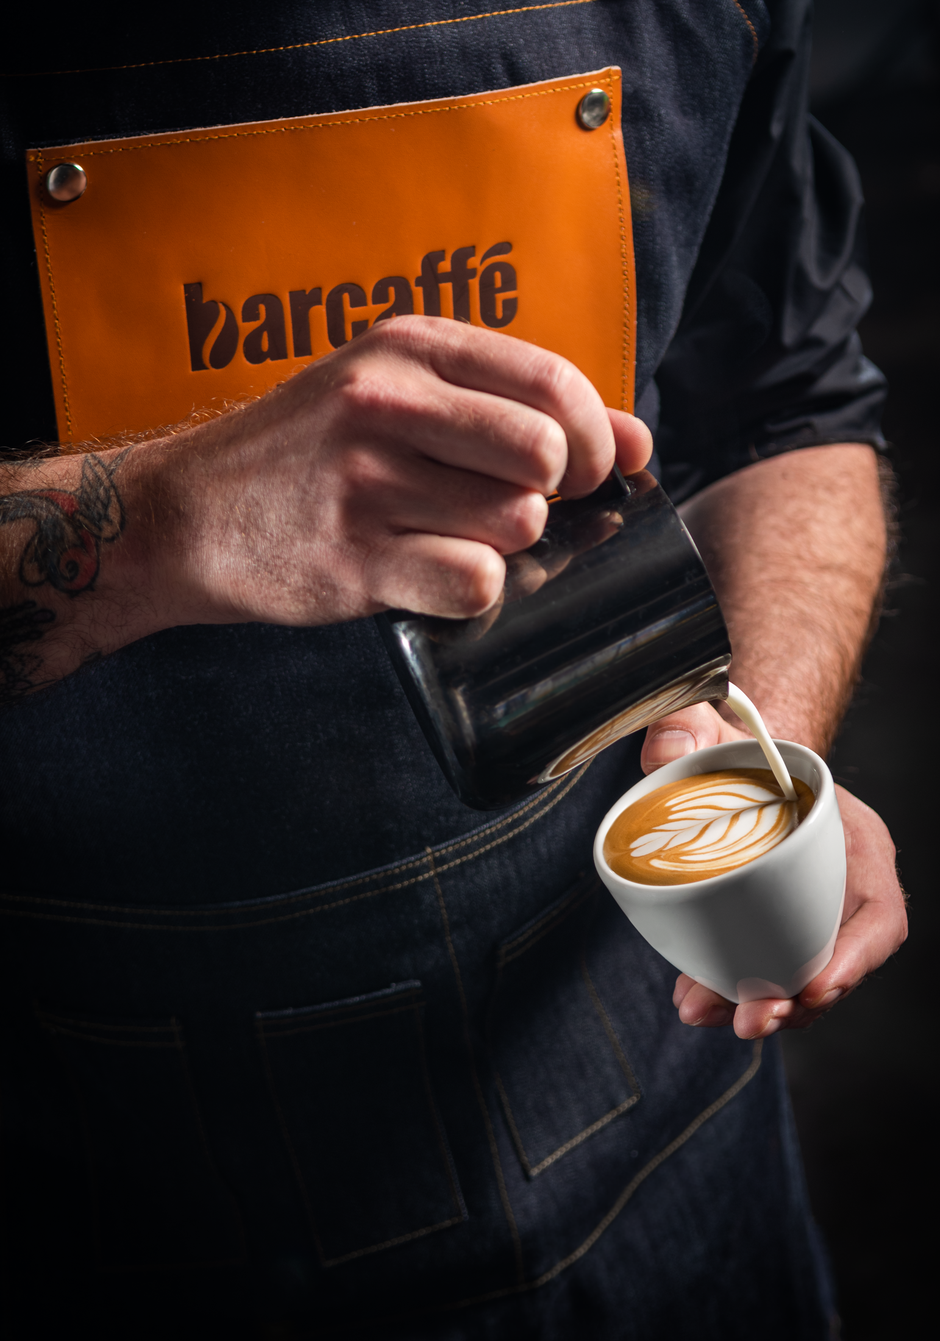 Barcaffe Barista Cup